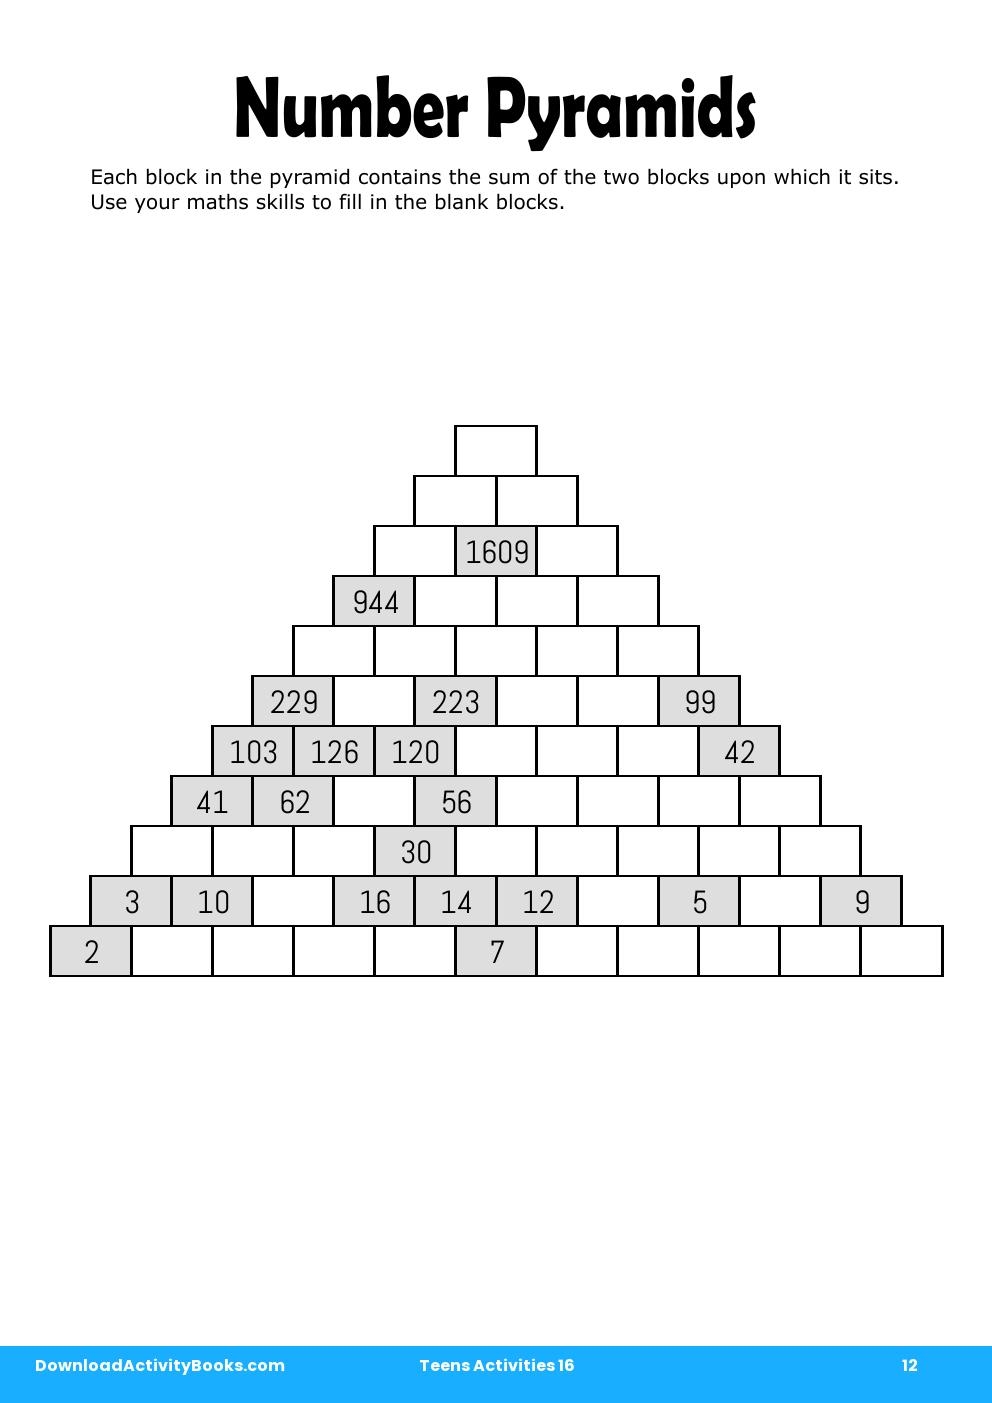 Number Pyramids in Teens Activities 16